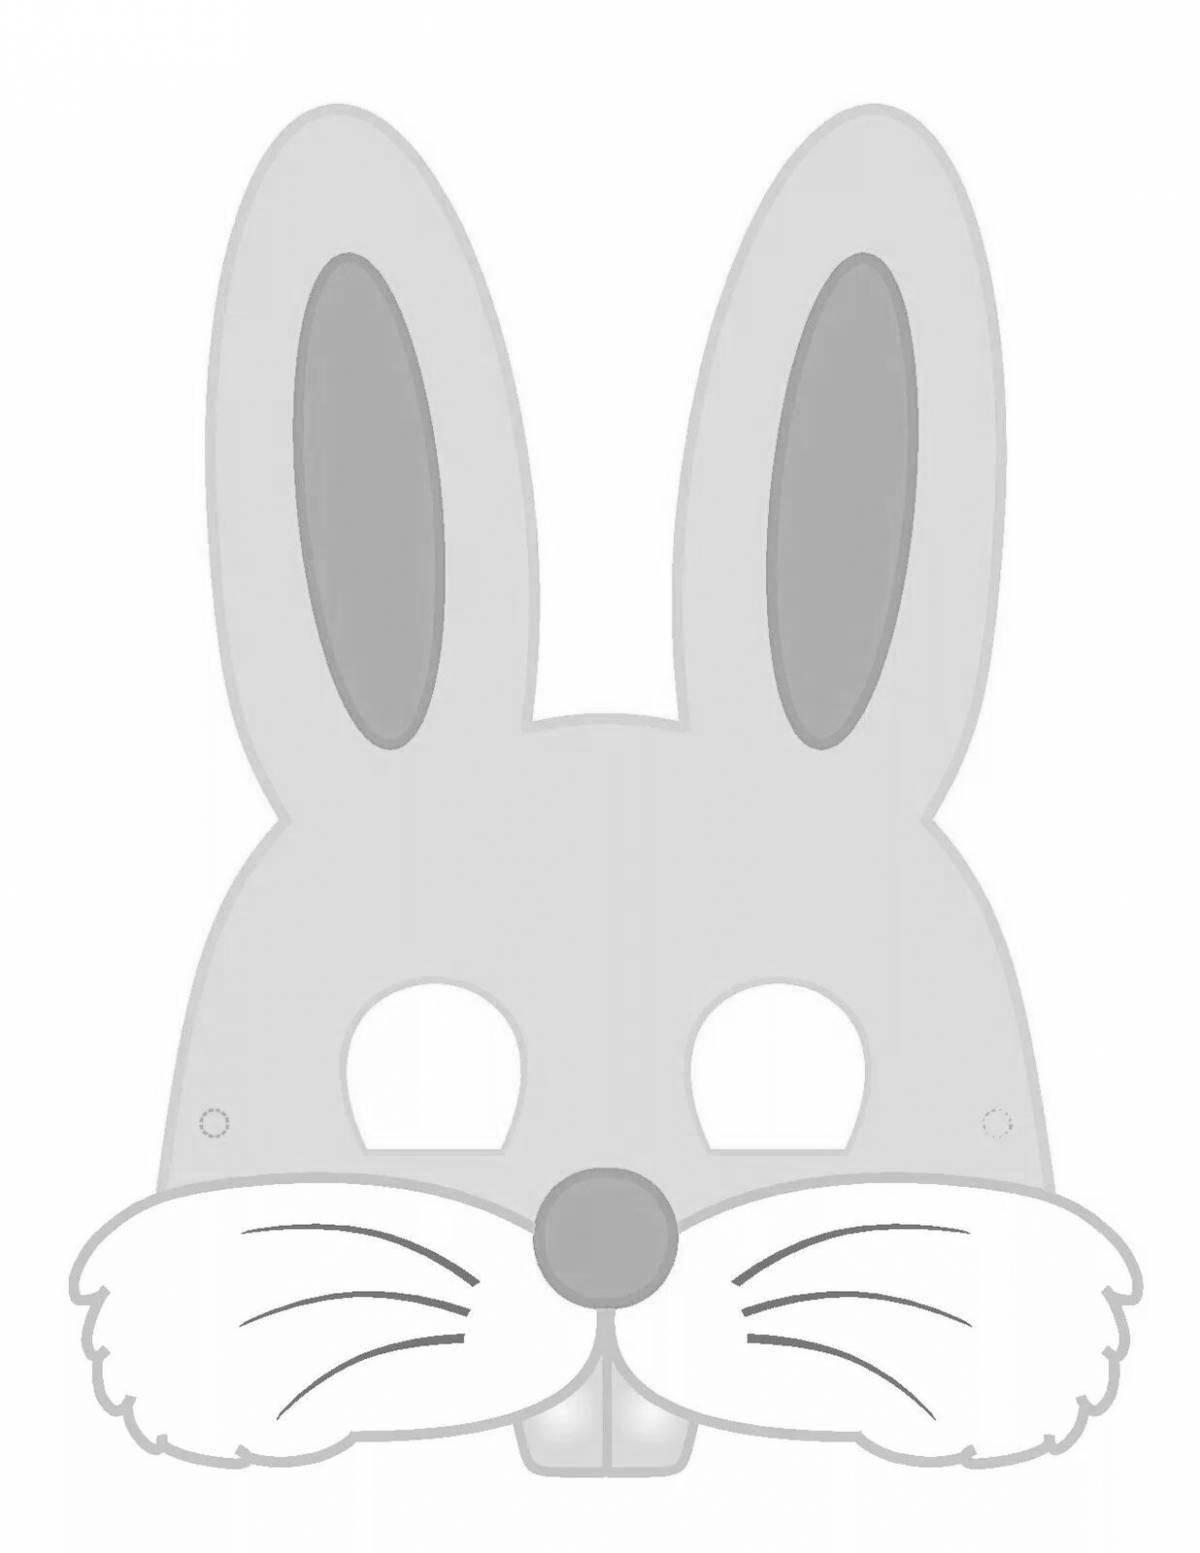 Handy Bunny Coloring Page